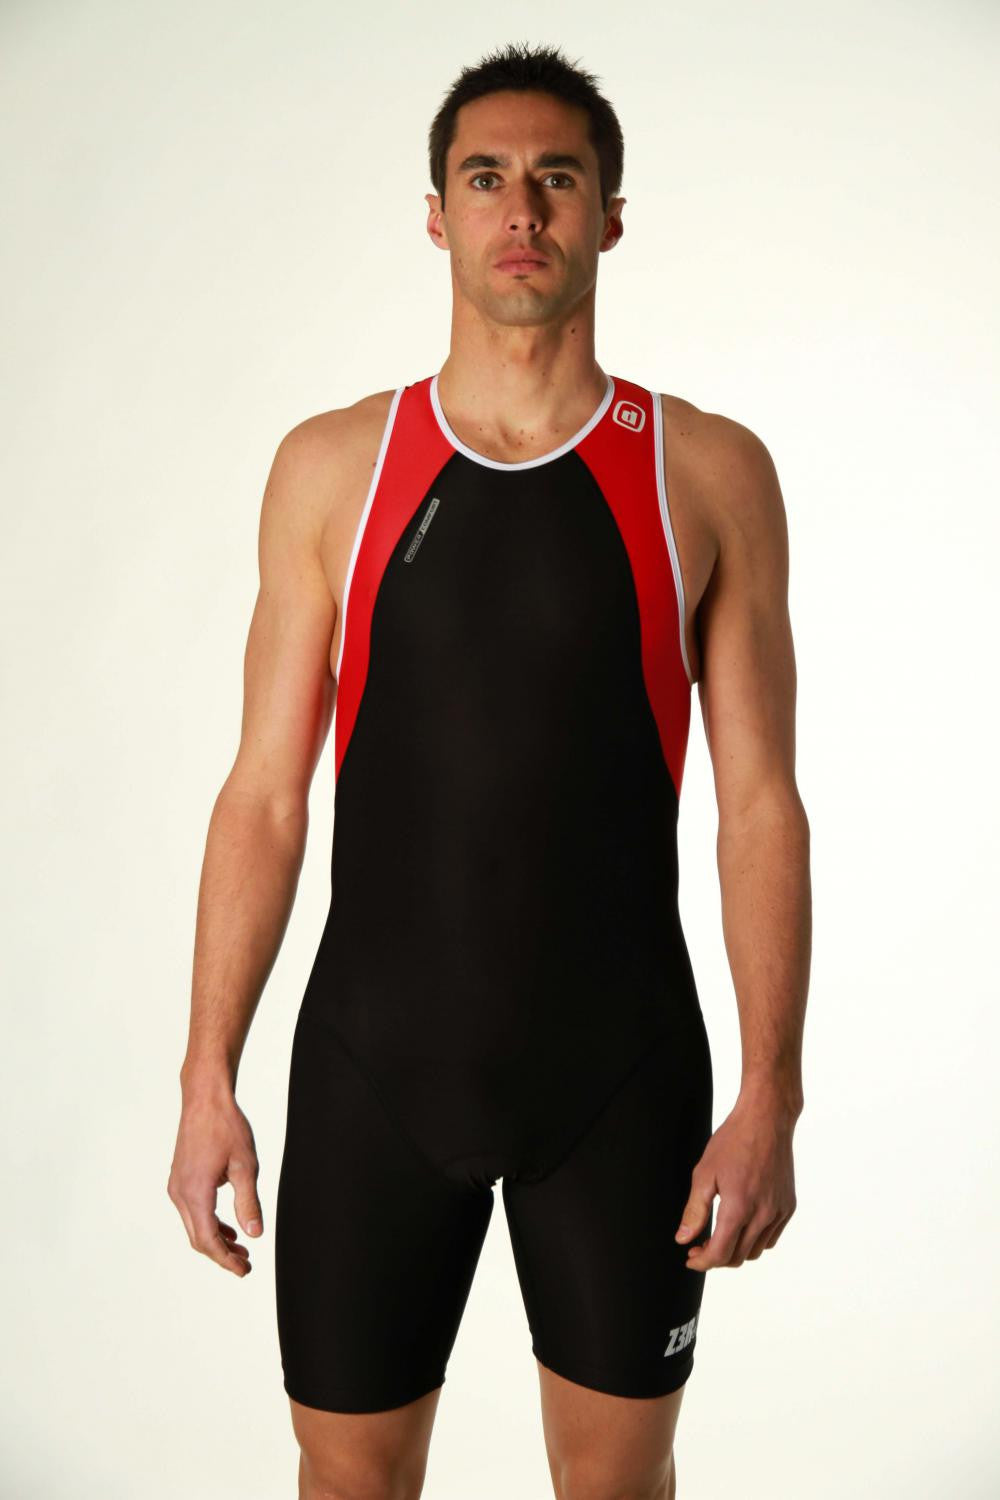 USuit Red - Universal (male/female) Triathlon Suit